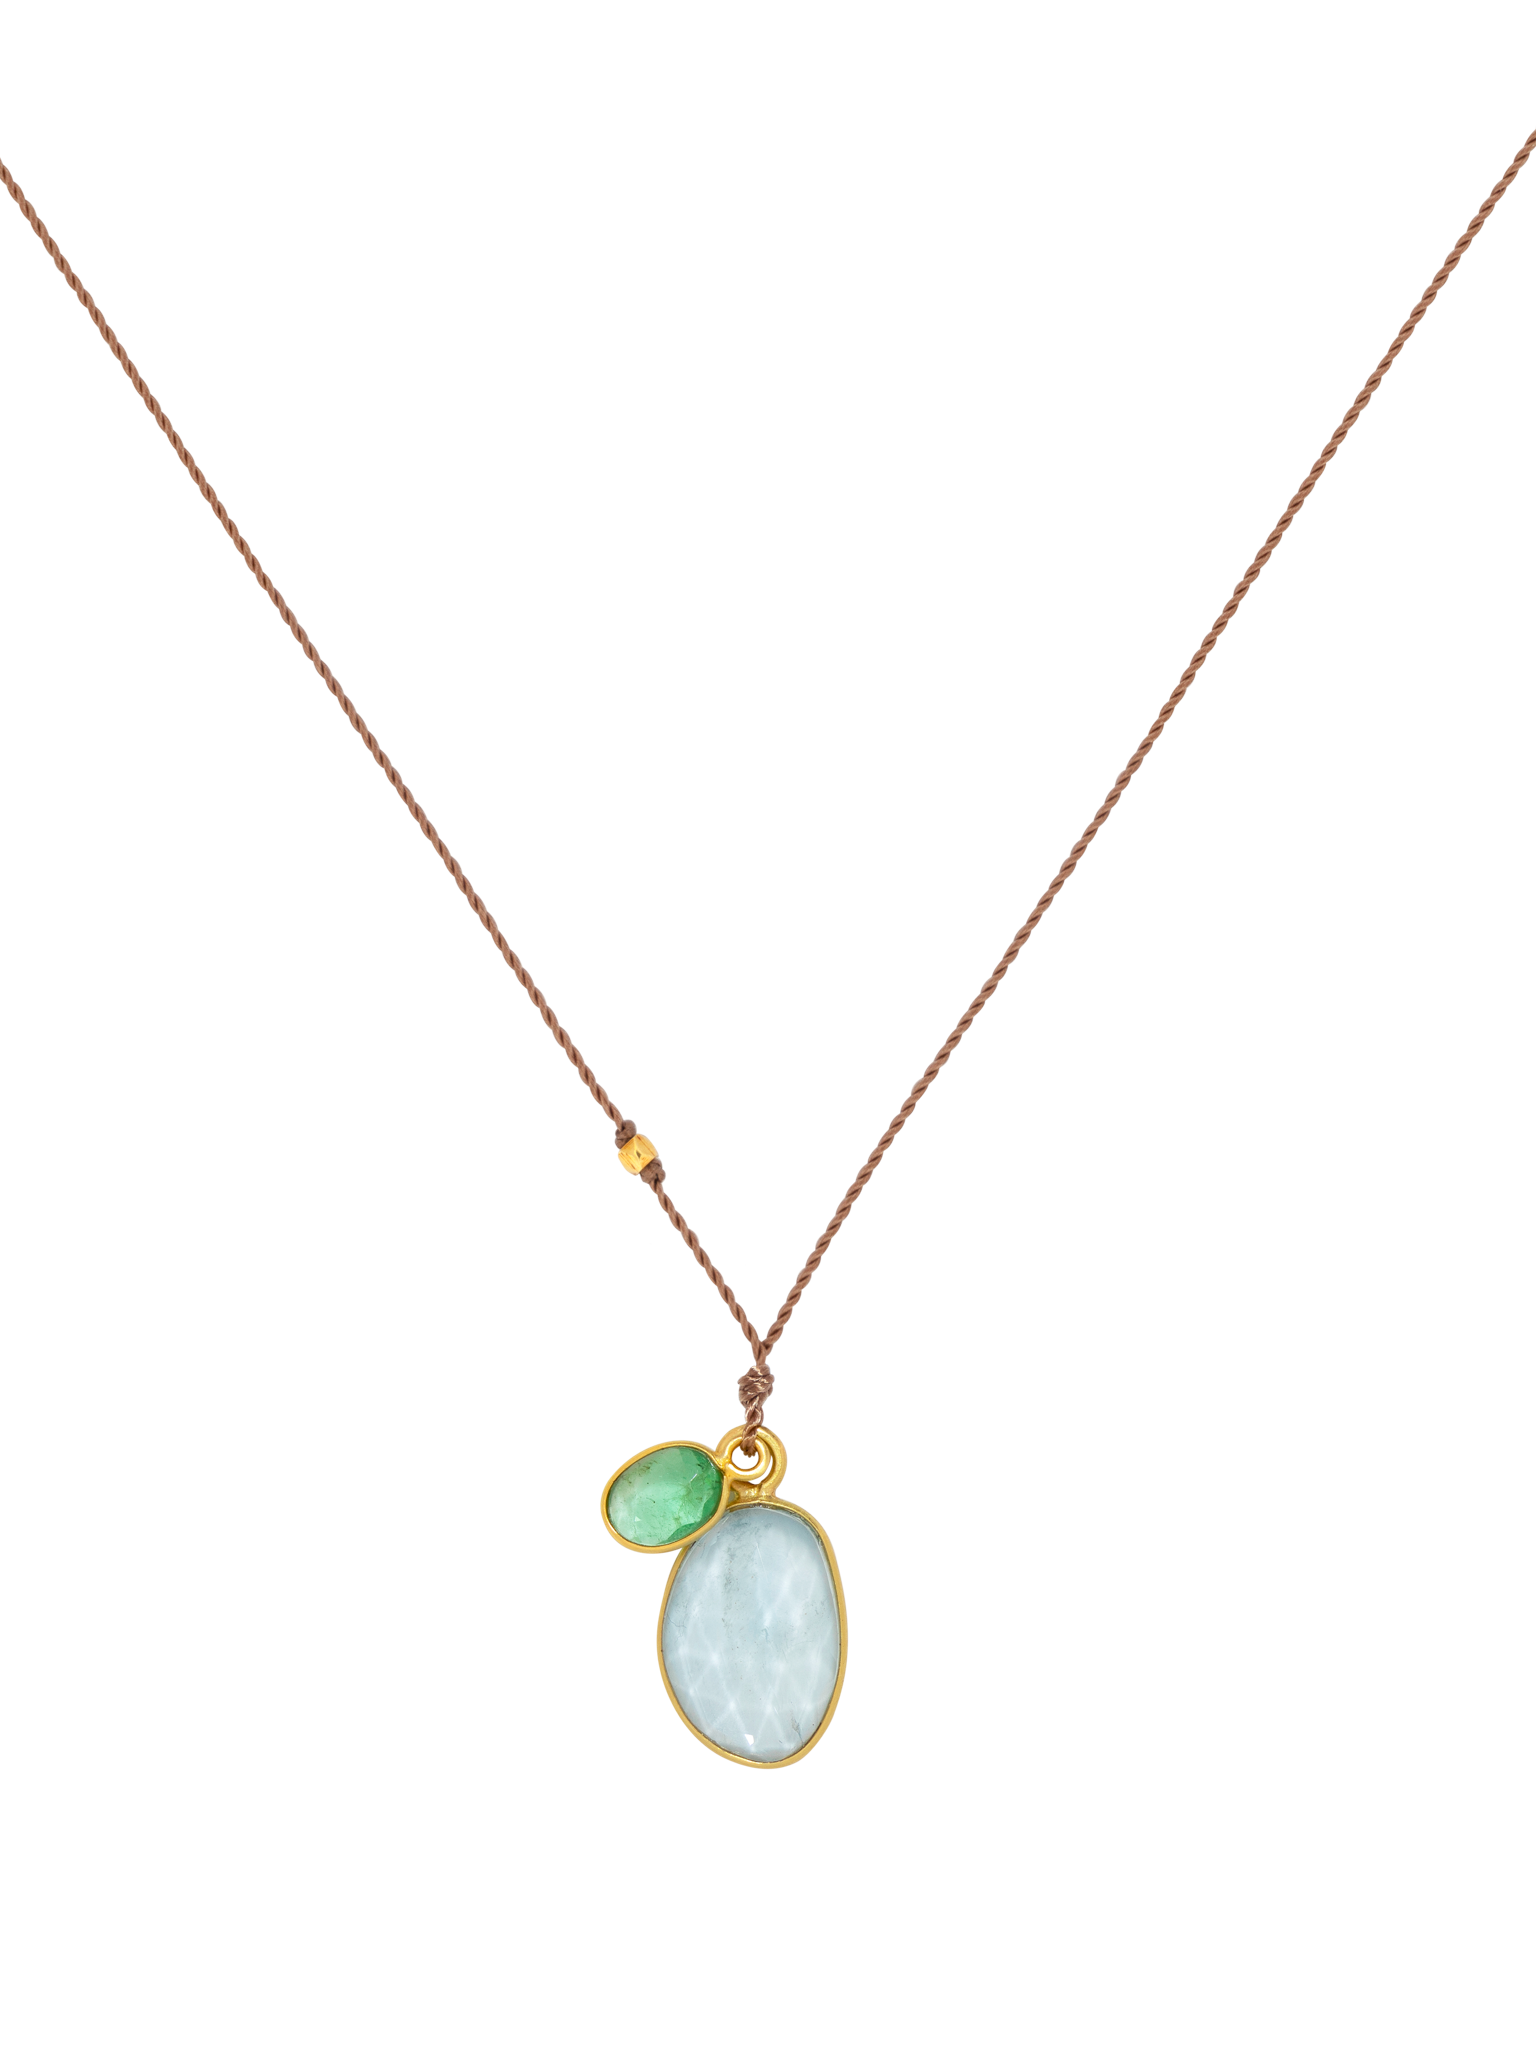 Aquamarine and emerald pendant necklace